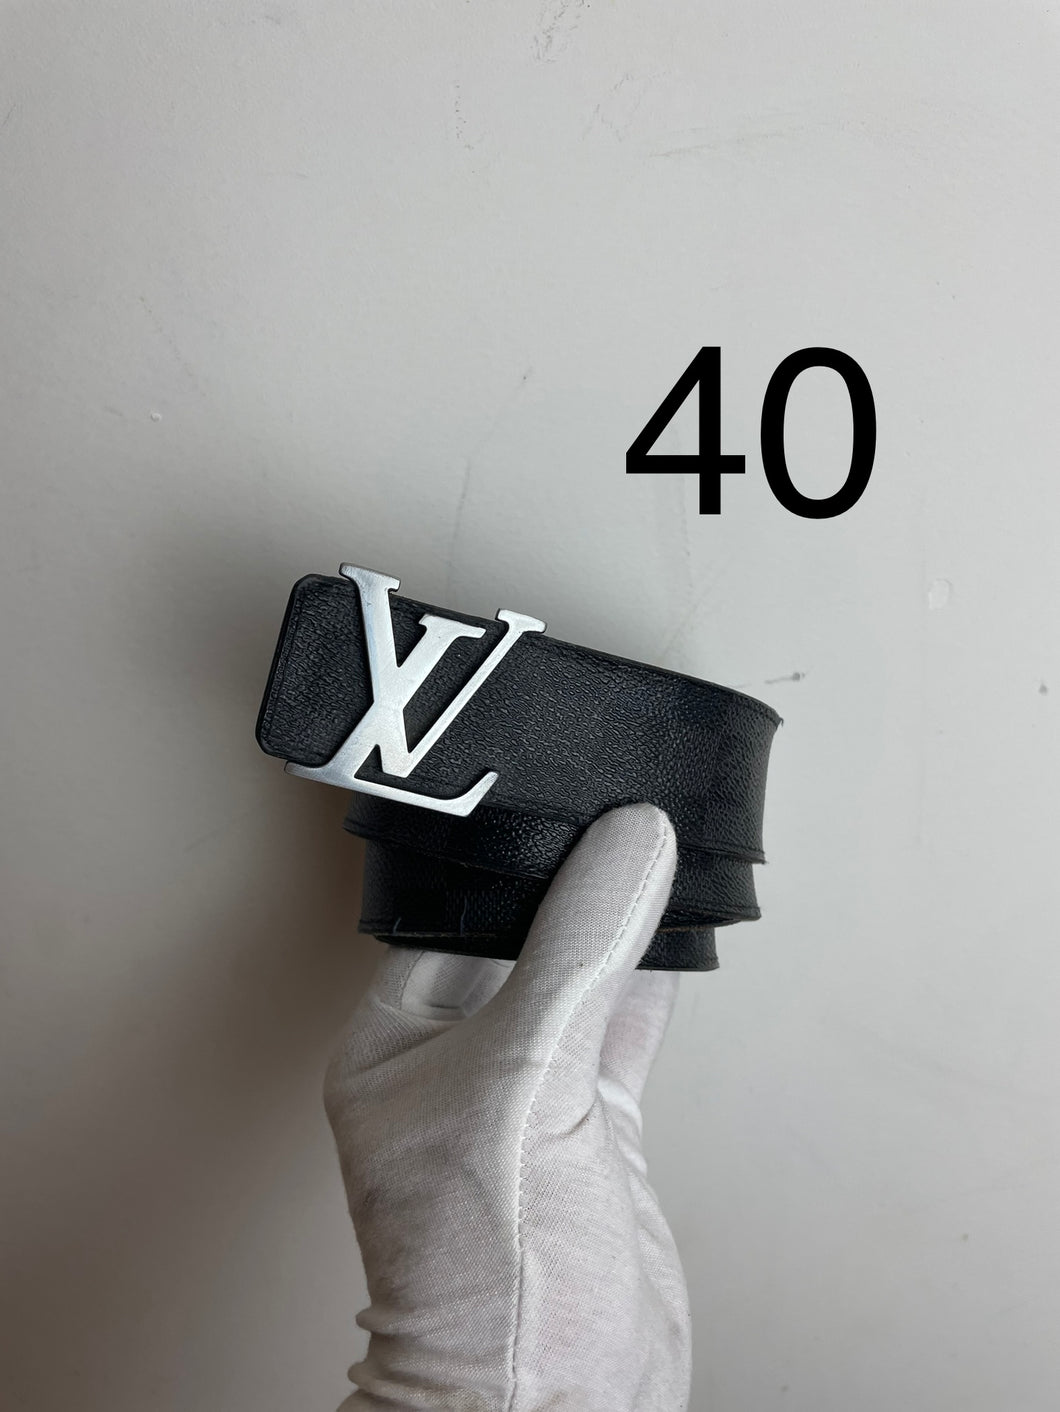 Louis Vuitton damier graphite initials belt sz 40 (fits 34-38) (sanded buckle)